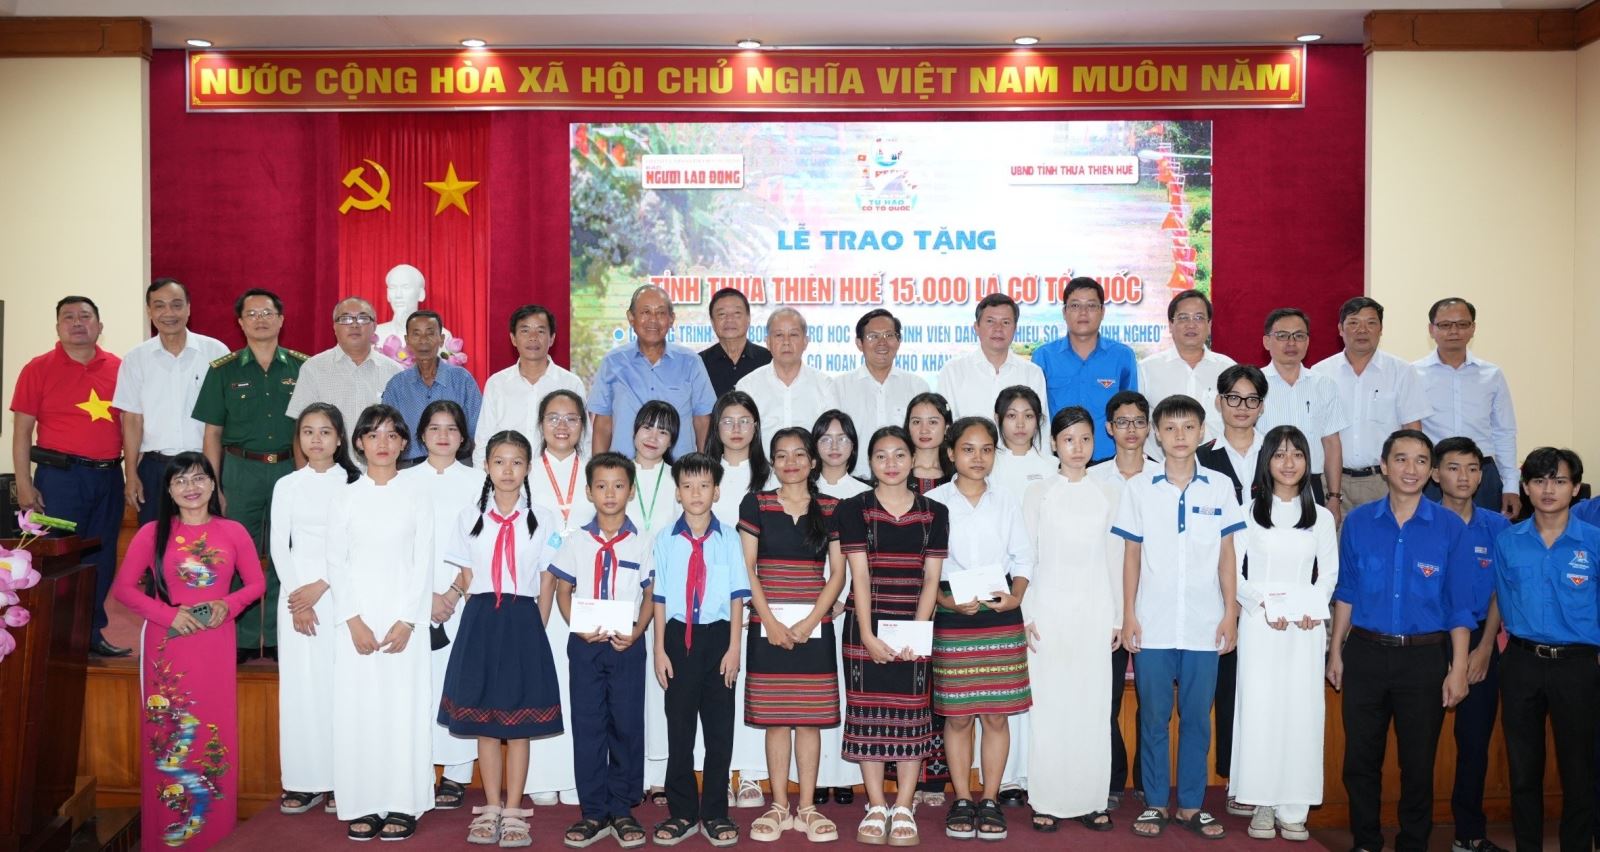 Chương trình cũng trao tặng 100 suất học bổng cho các học sinh, sinh viên Thừa Thiên- Huế và hai suất “Mai vàng Tri ân”.